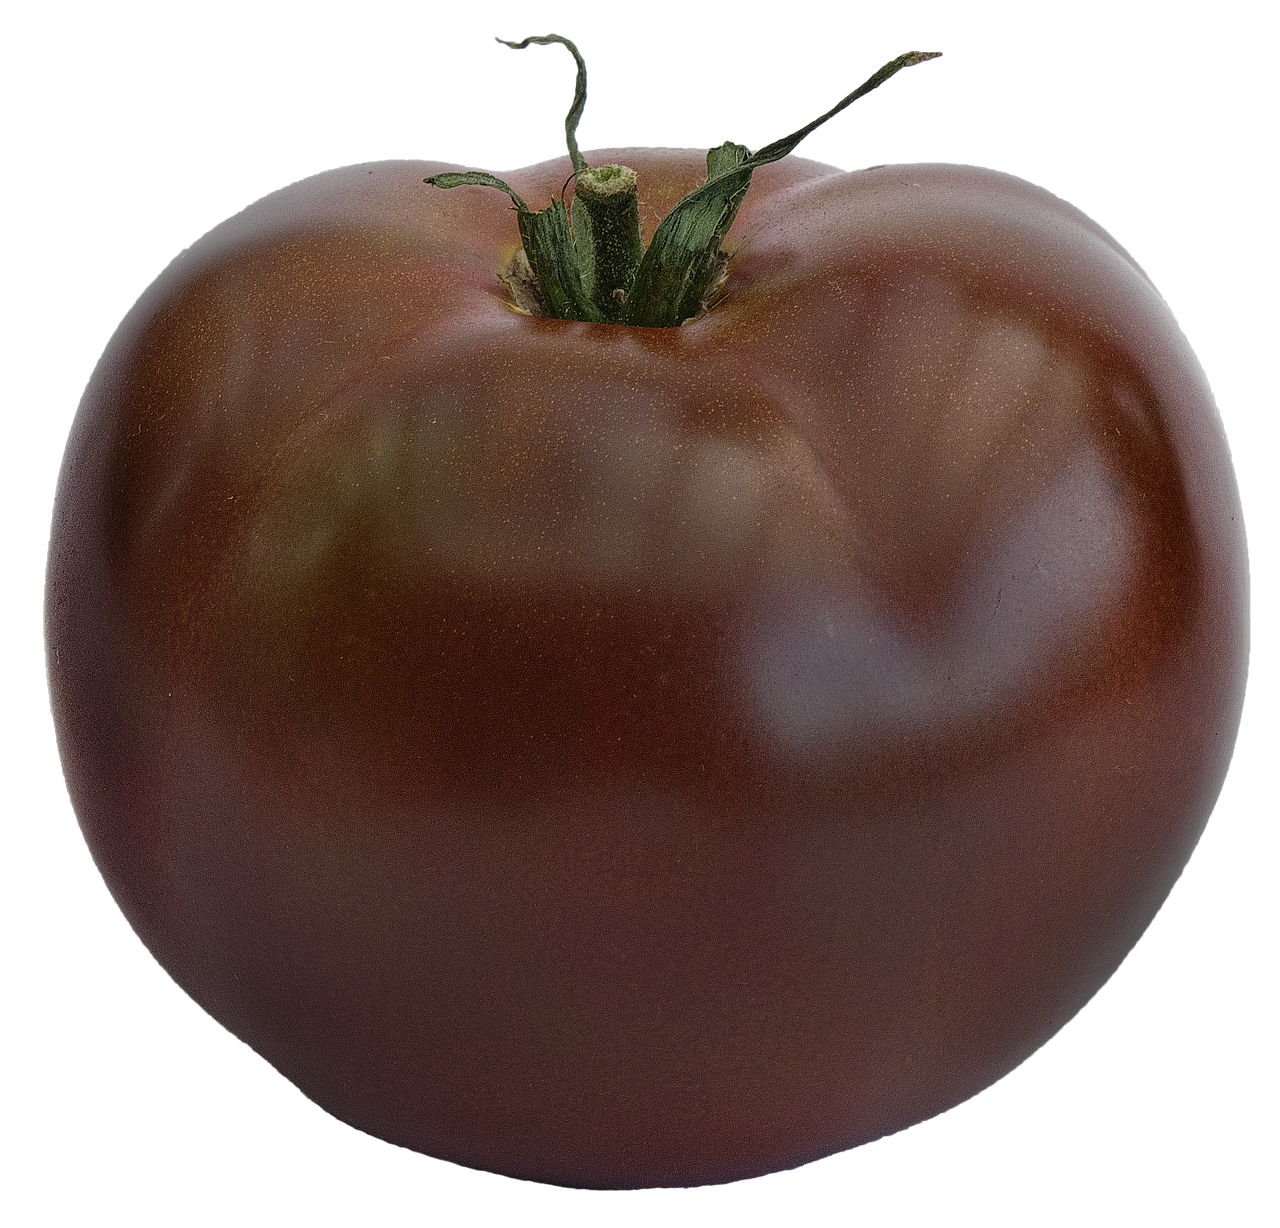 Pomidoras, Juodas Pomidoras, Veislė Zebrino, Solanum Lycopersicum, Paradeisapfel, Užaugę, Krūmo Pomidoras, Maistas, Nachtschattengewächs, Jautienos Pomidorai